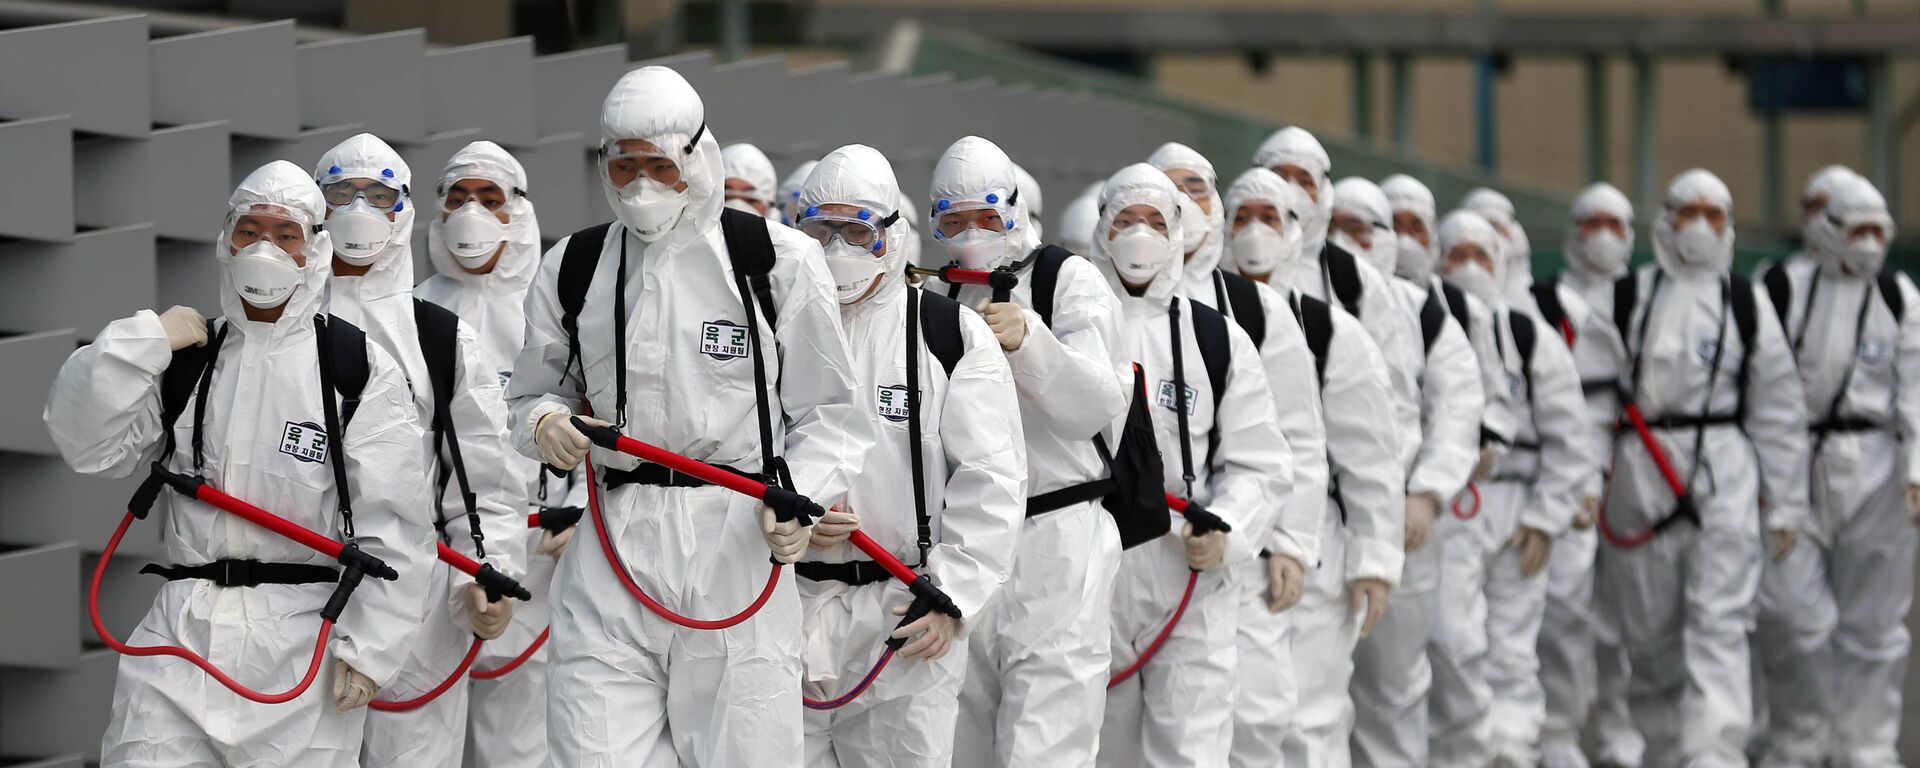 جنود من كوريا الجنوبية يرتدون أزياء واقية خاصة خلال تنفيذ اجراءات الوقاية للحد من انتشار فيروس كورونا COVID-19 في كوريا الجنوبية، 29 فبراير 2020 - سبوتنيك عربي, 1920, 28.02.2021